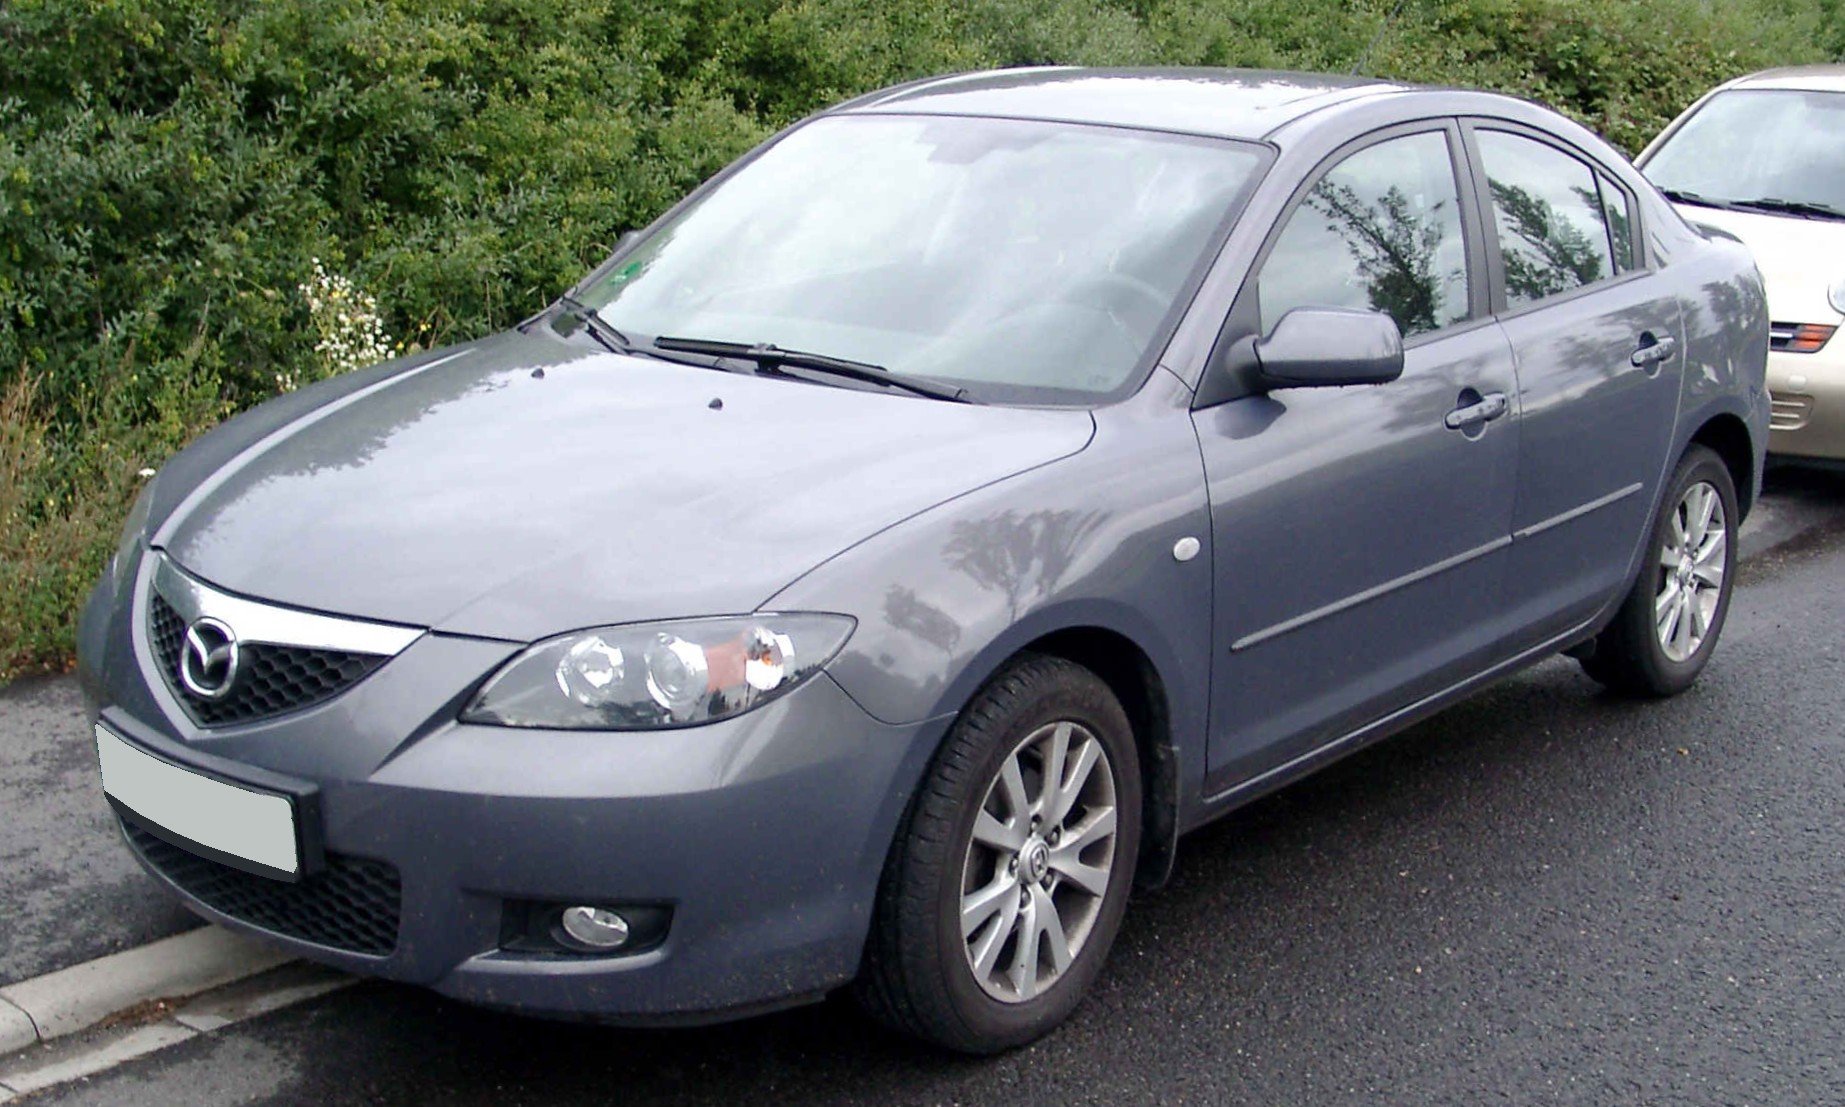 Mazda бу. Mazda 3 BK 2006. Мазда 3 БК седан. Мазда 3 ББК седан. Mazda 3 BK 2006 седан.